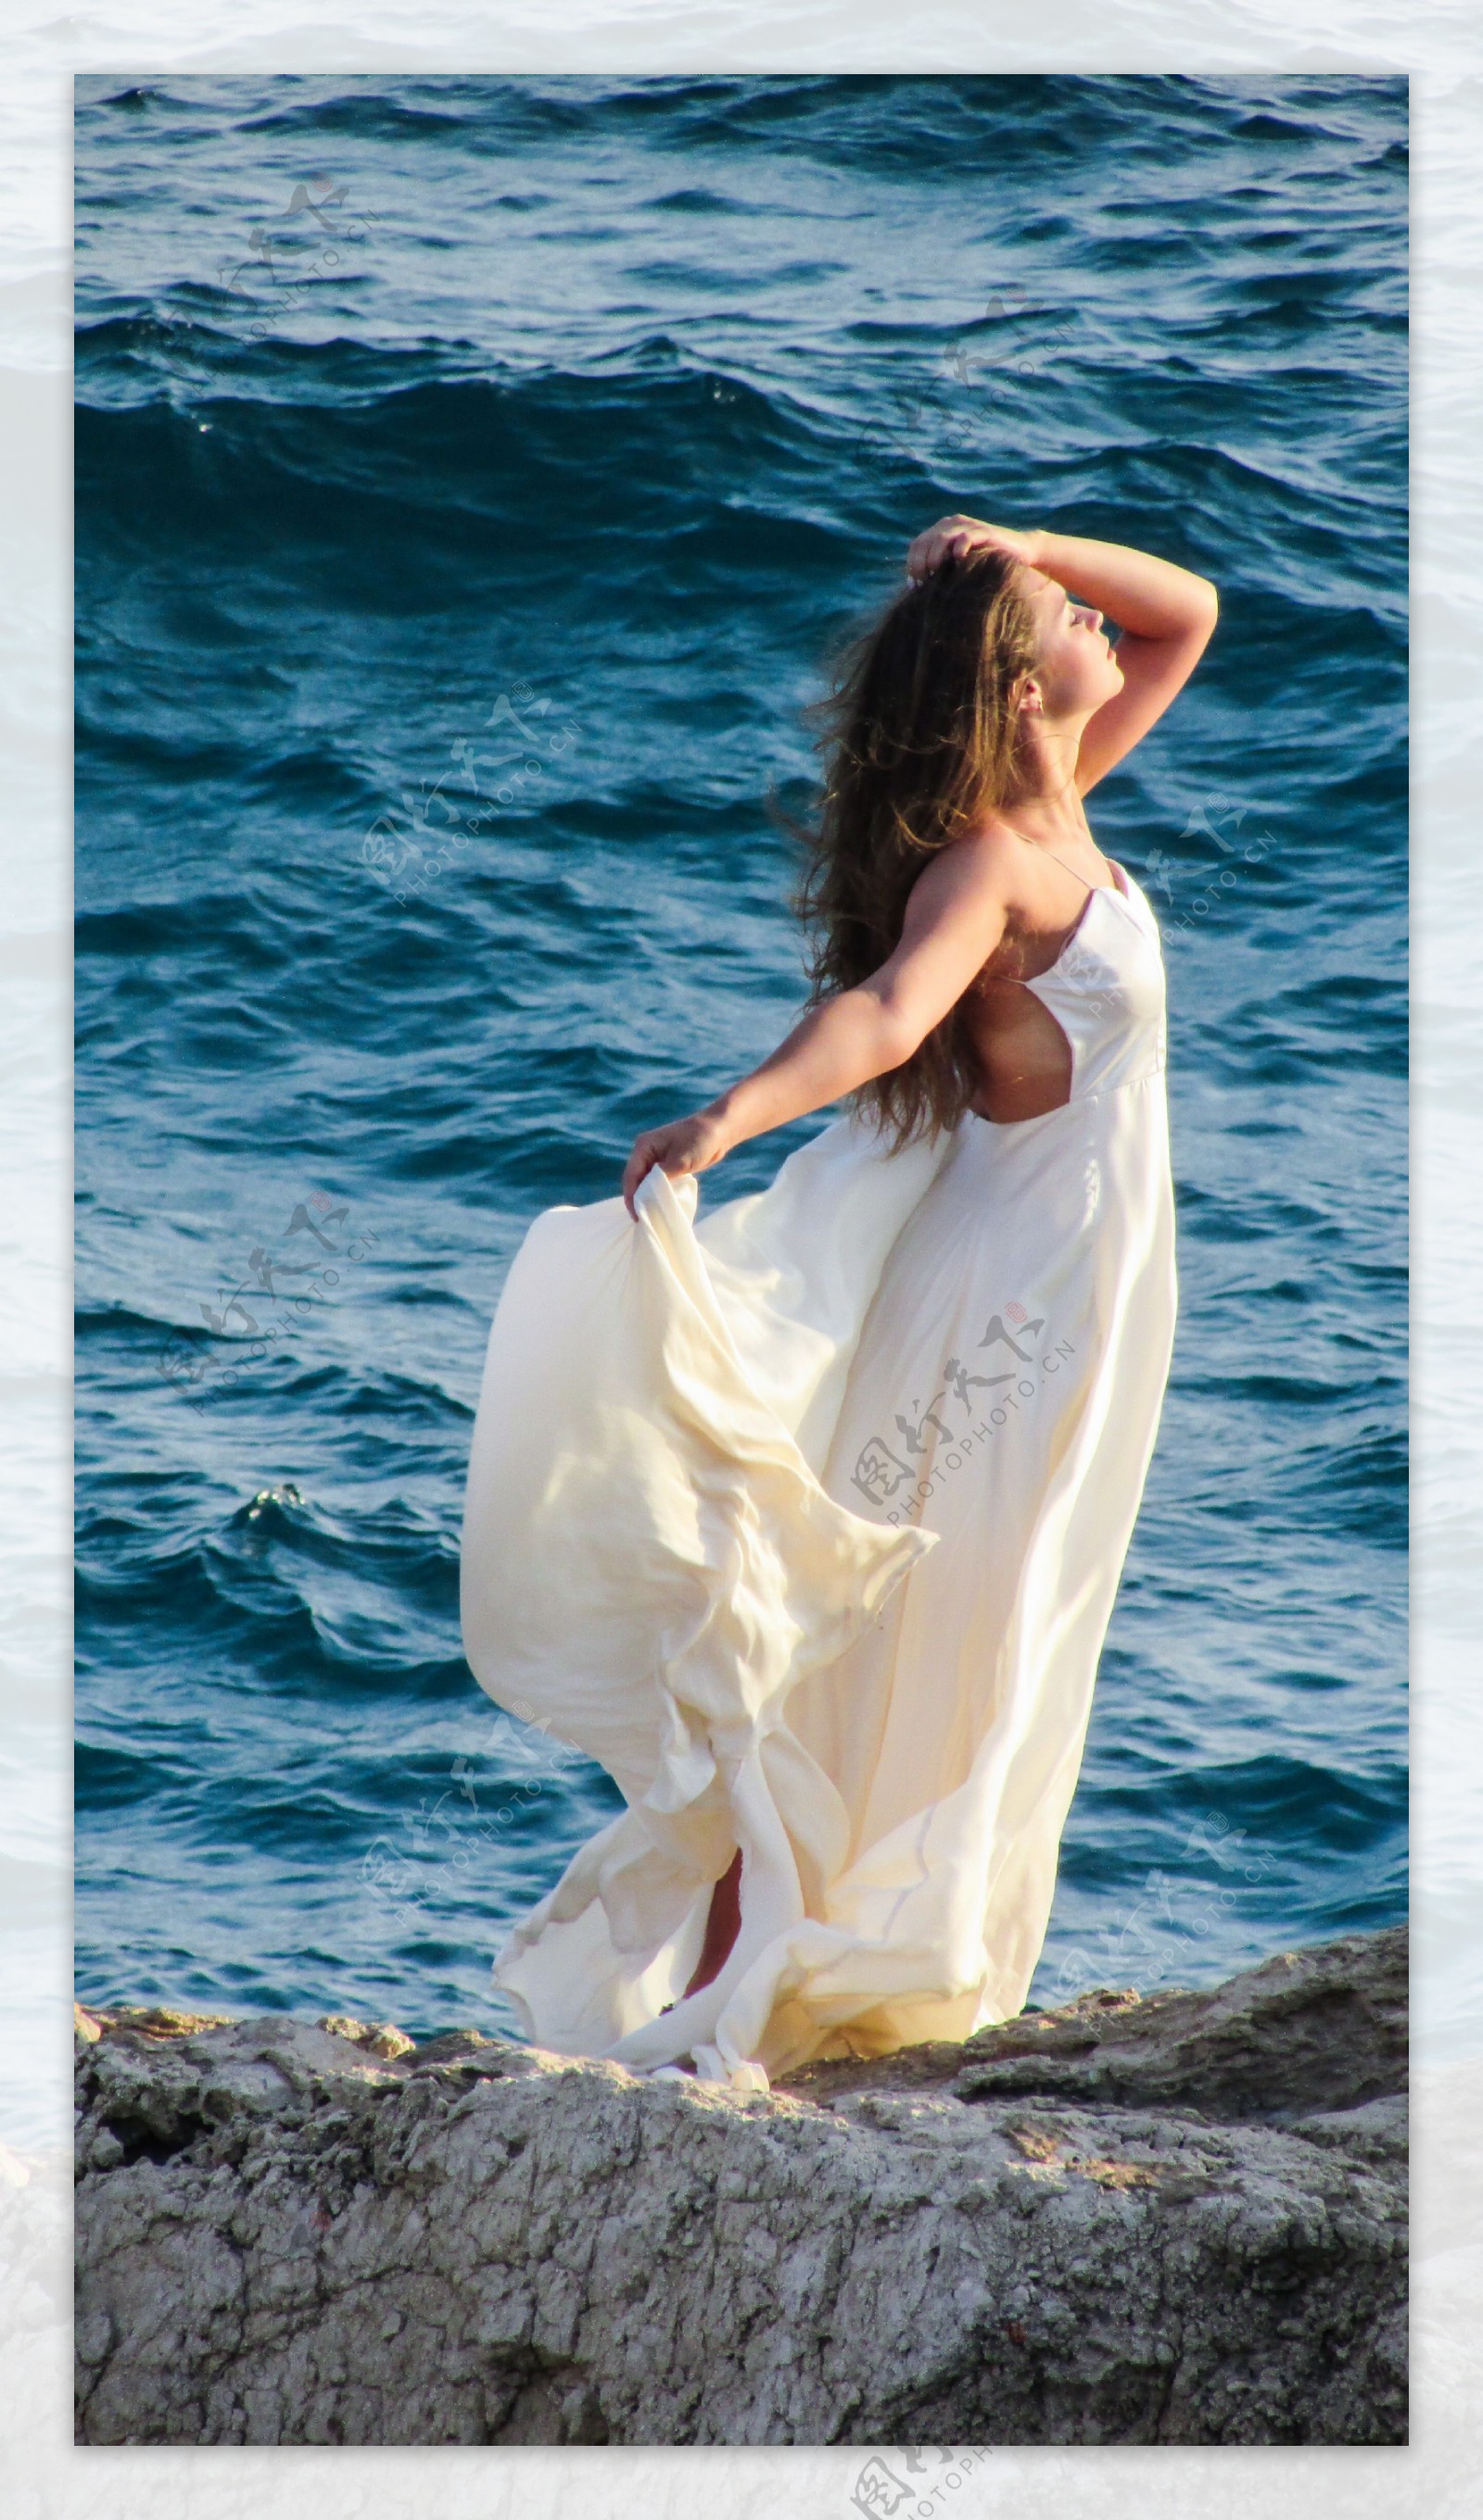 海边白裙美女风景图片